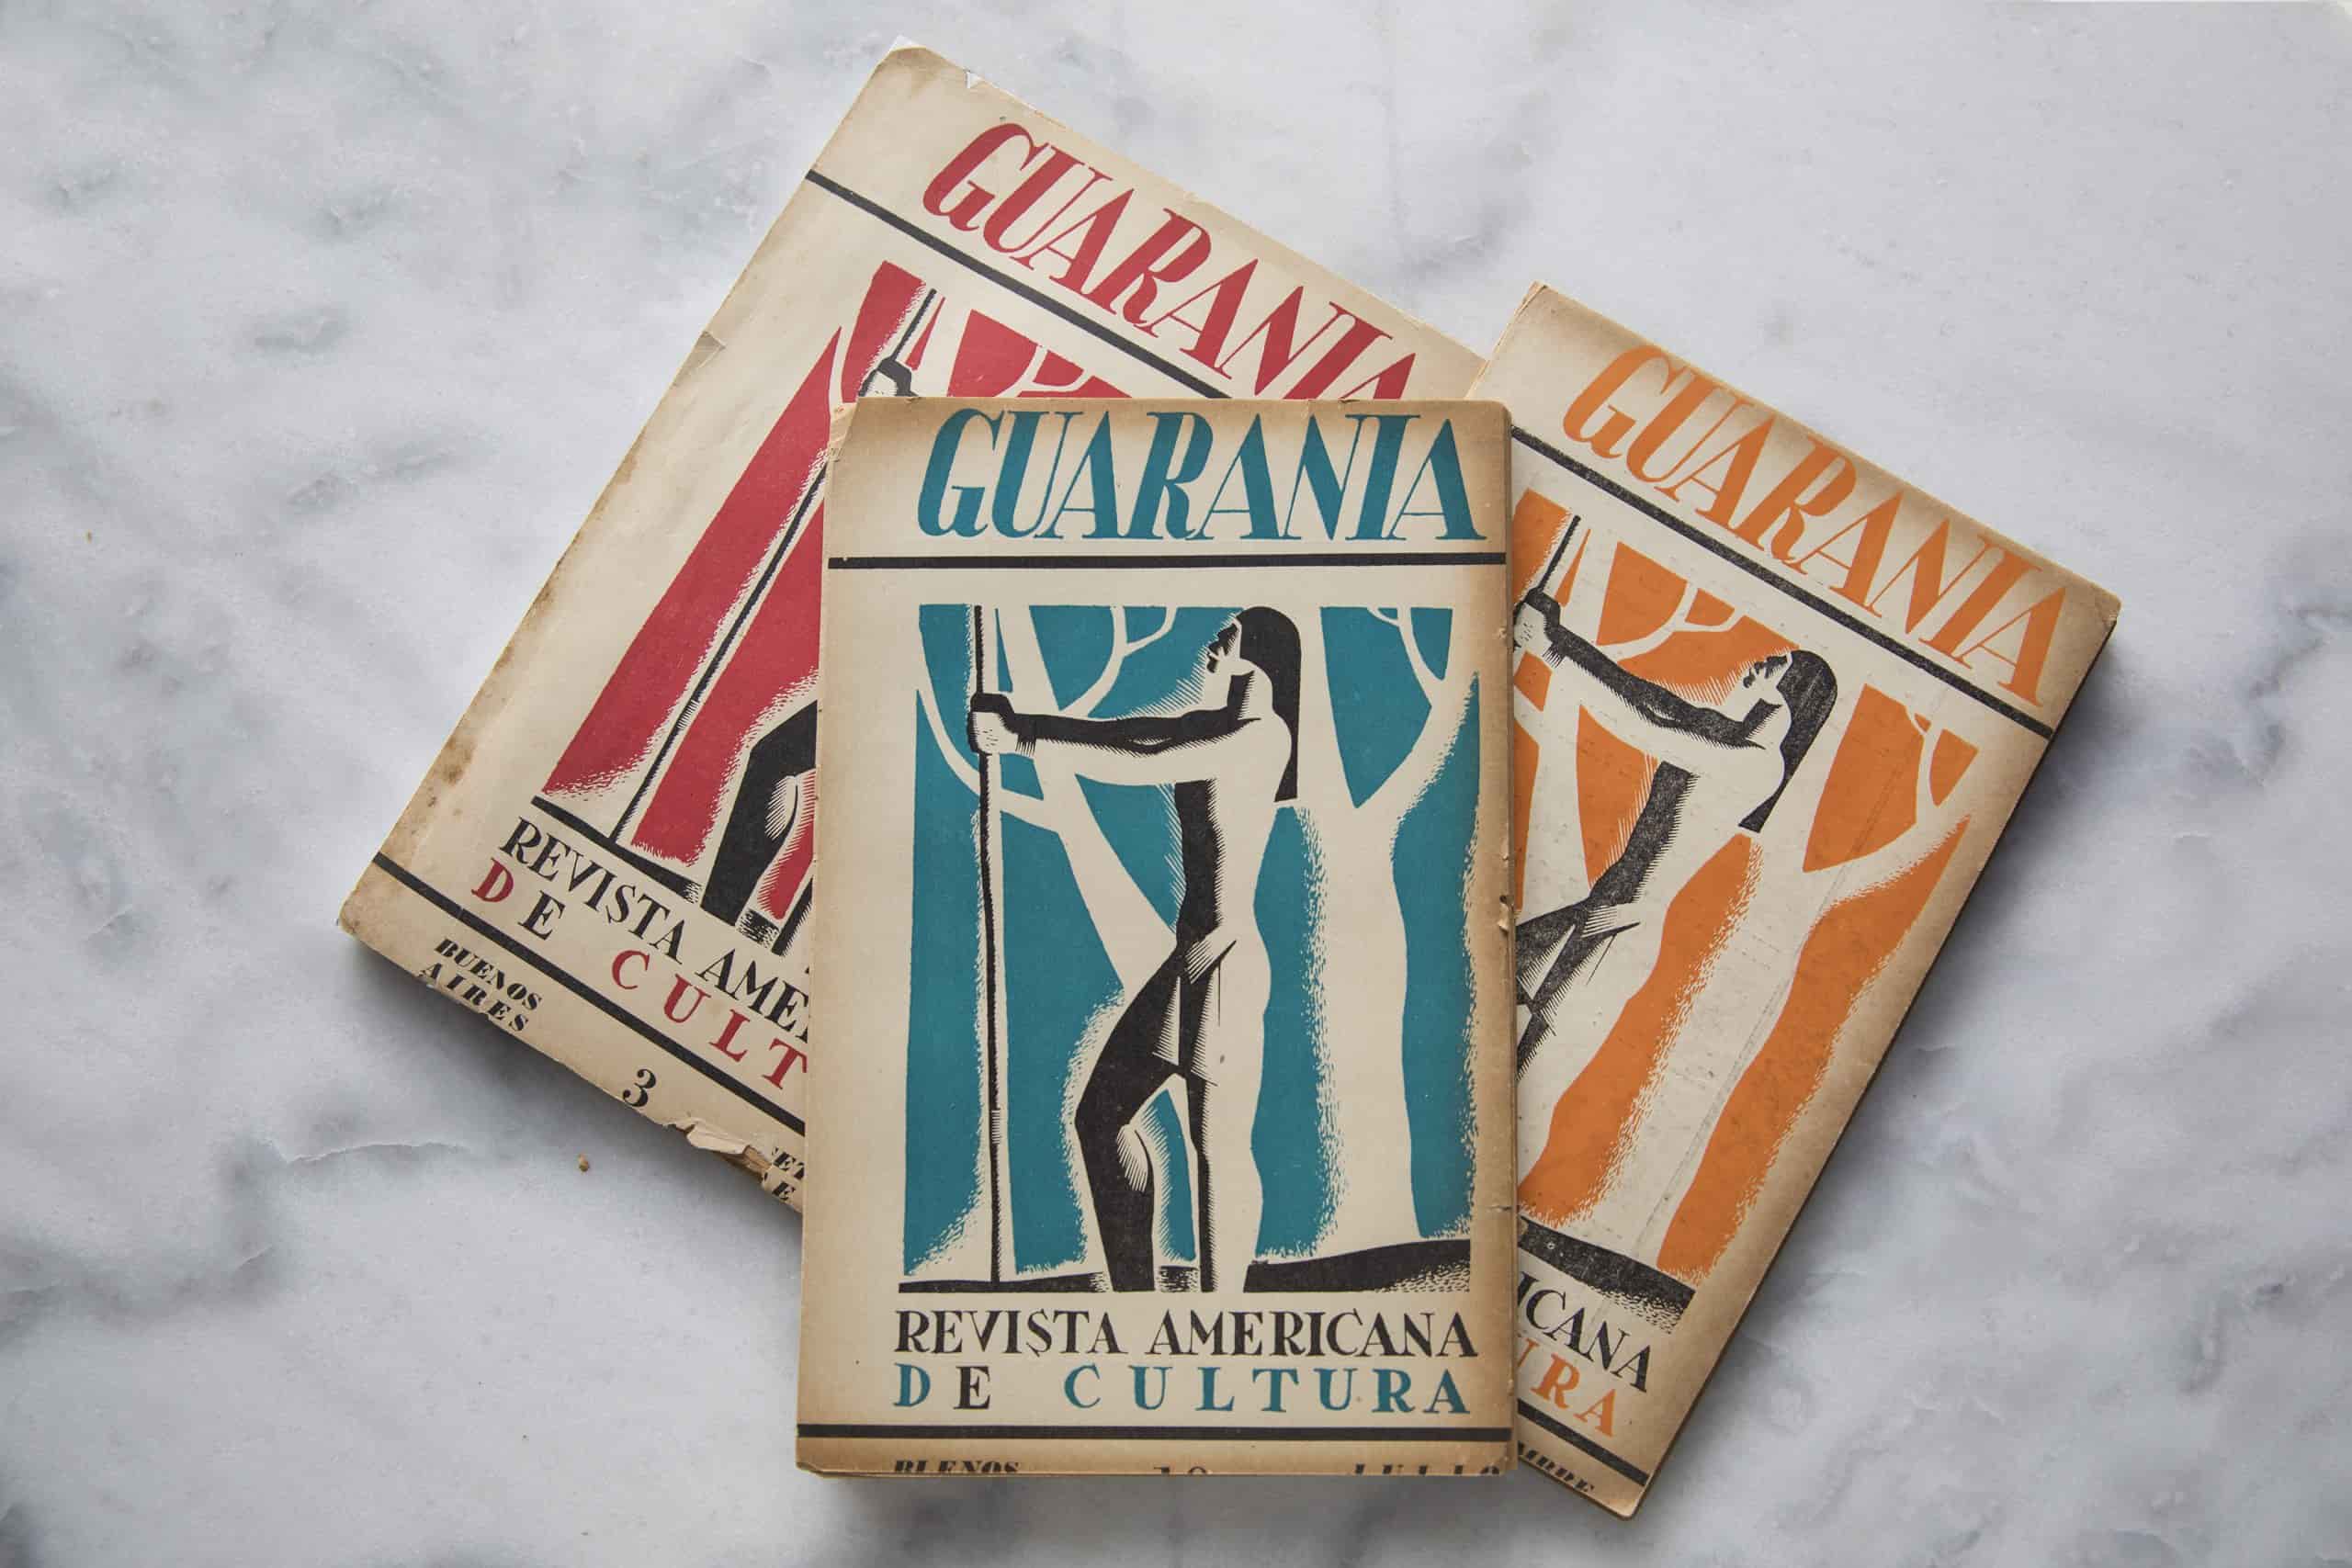 Revista Guarania, tercera época, 1942-1943. Colección privada. © Laura Mandelik